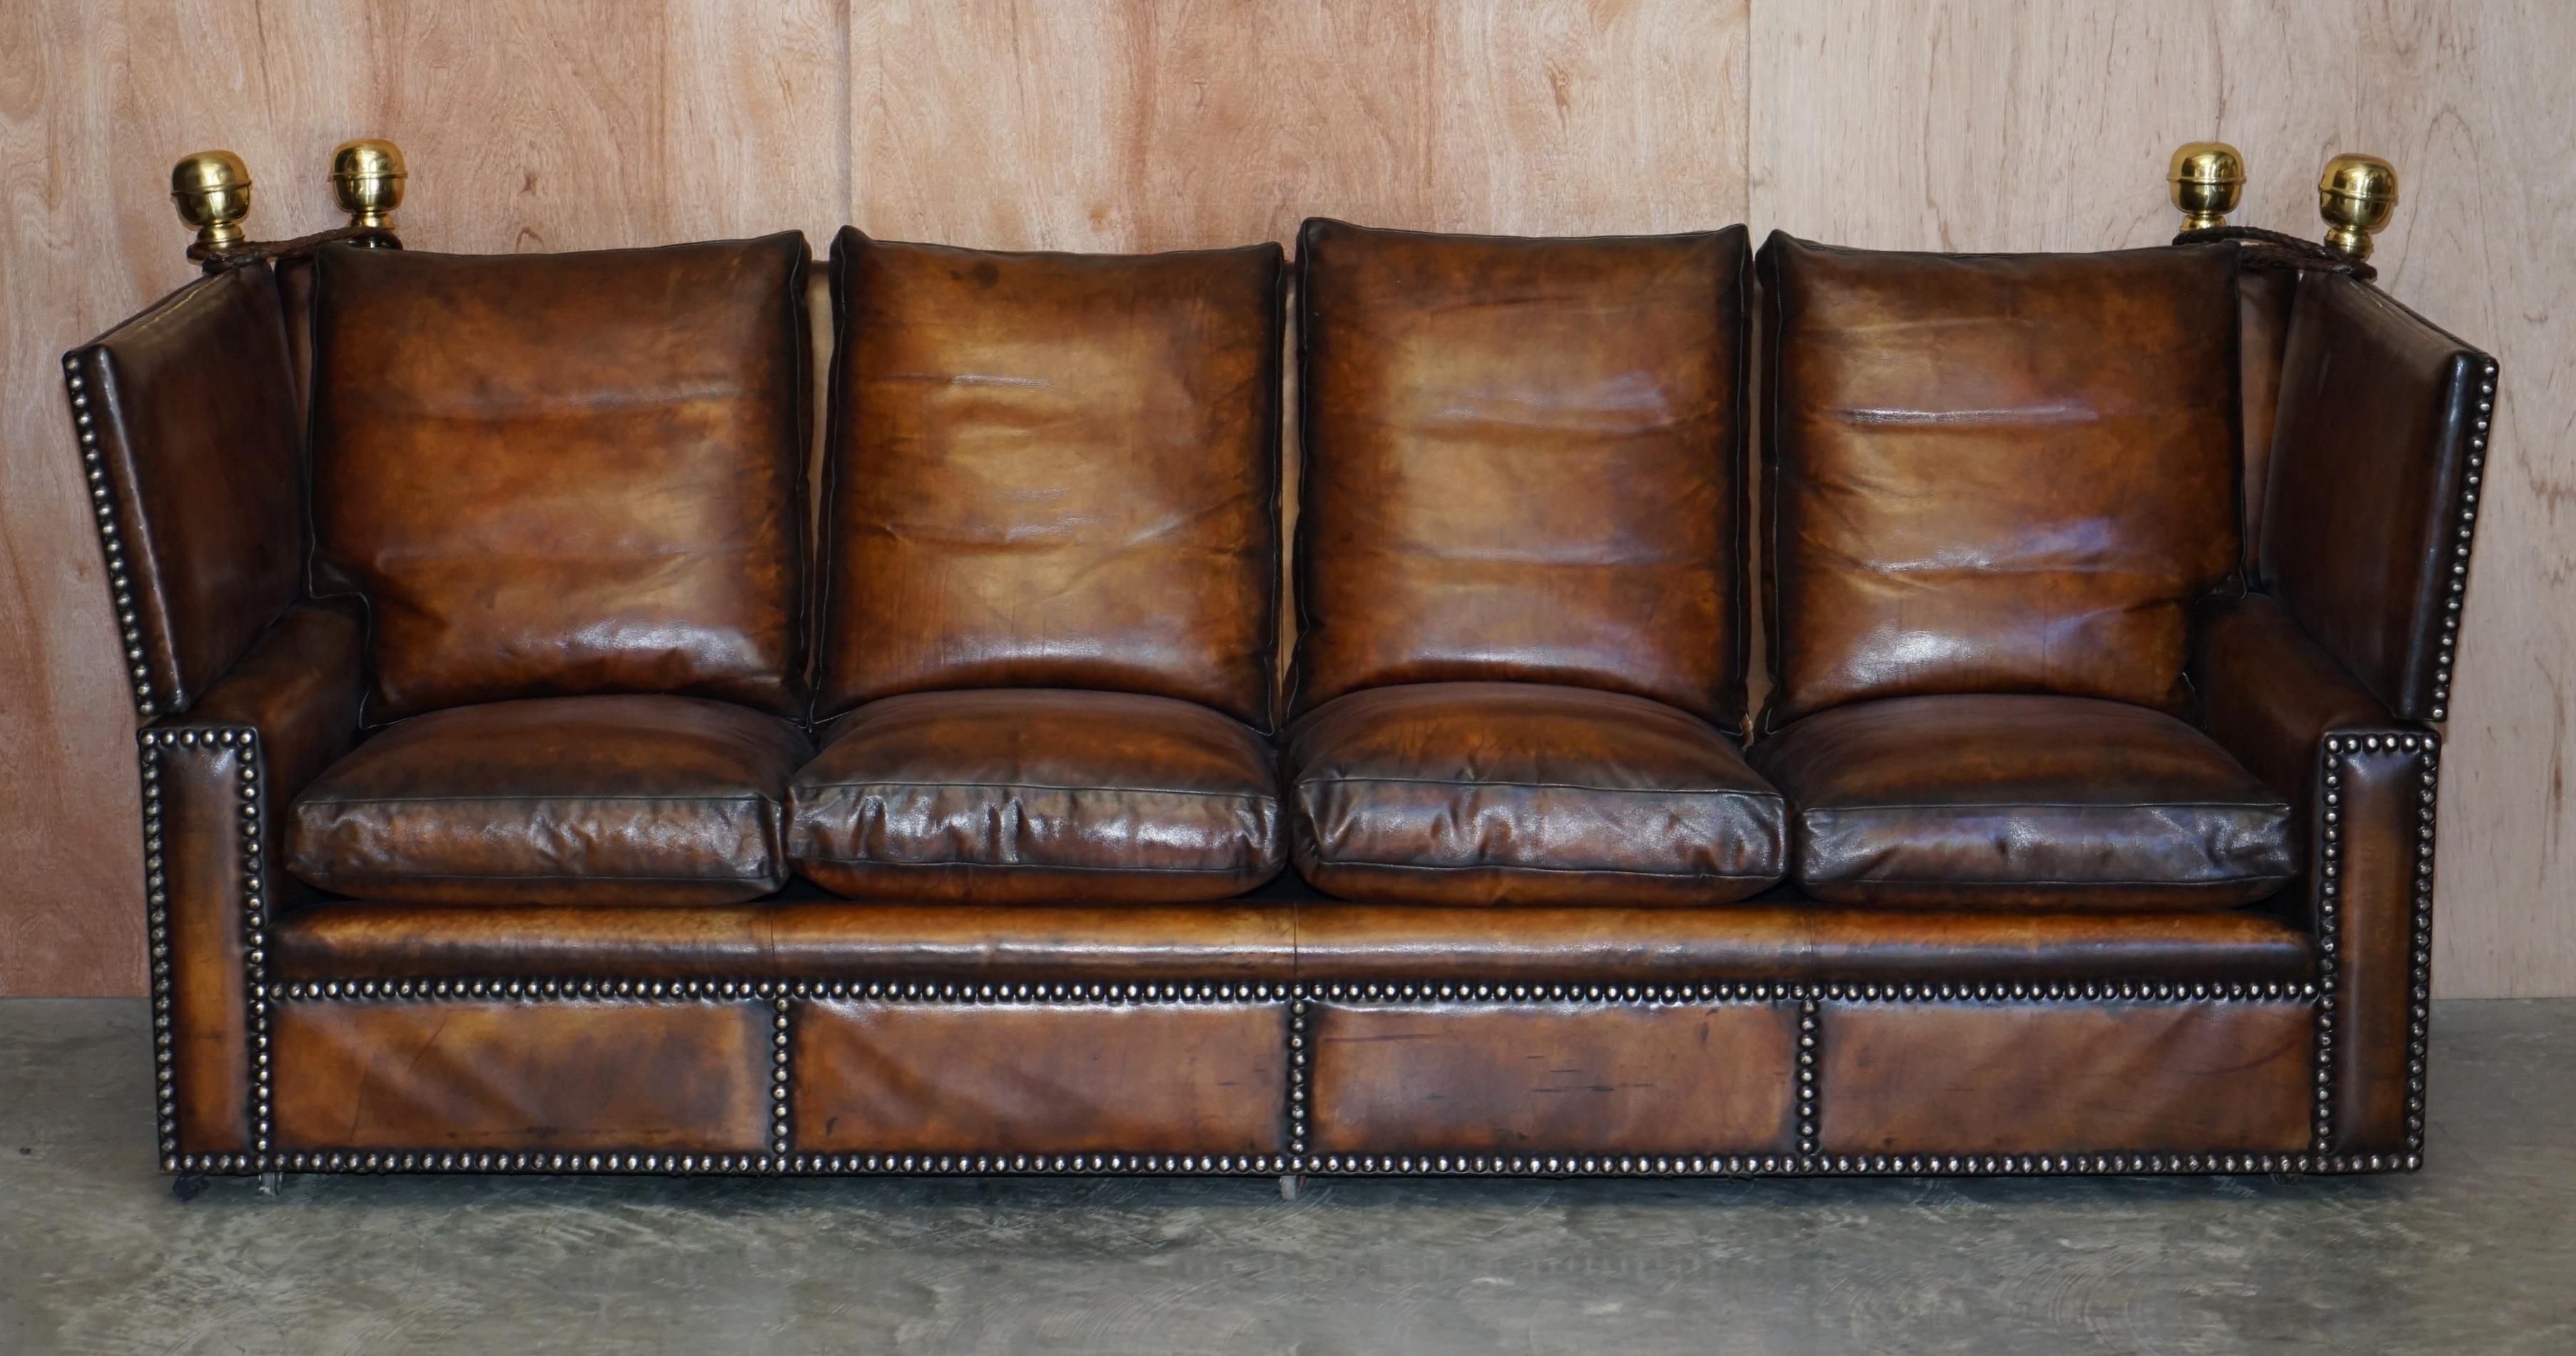 Wir freuen uns, dieses sehr seltene, vollständig restaurierte viersitzige Knoll-Sofa mit übergroßen, federgefüllten Kissen anbieten zu können 

Wenn Sie sich dieses Angebot ansehen, dann wissen Sie wahrscheinlich genau, um was es sich bei diesem